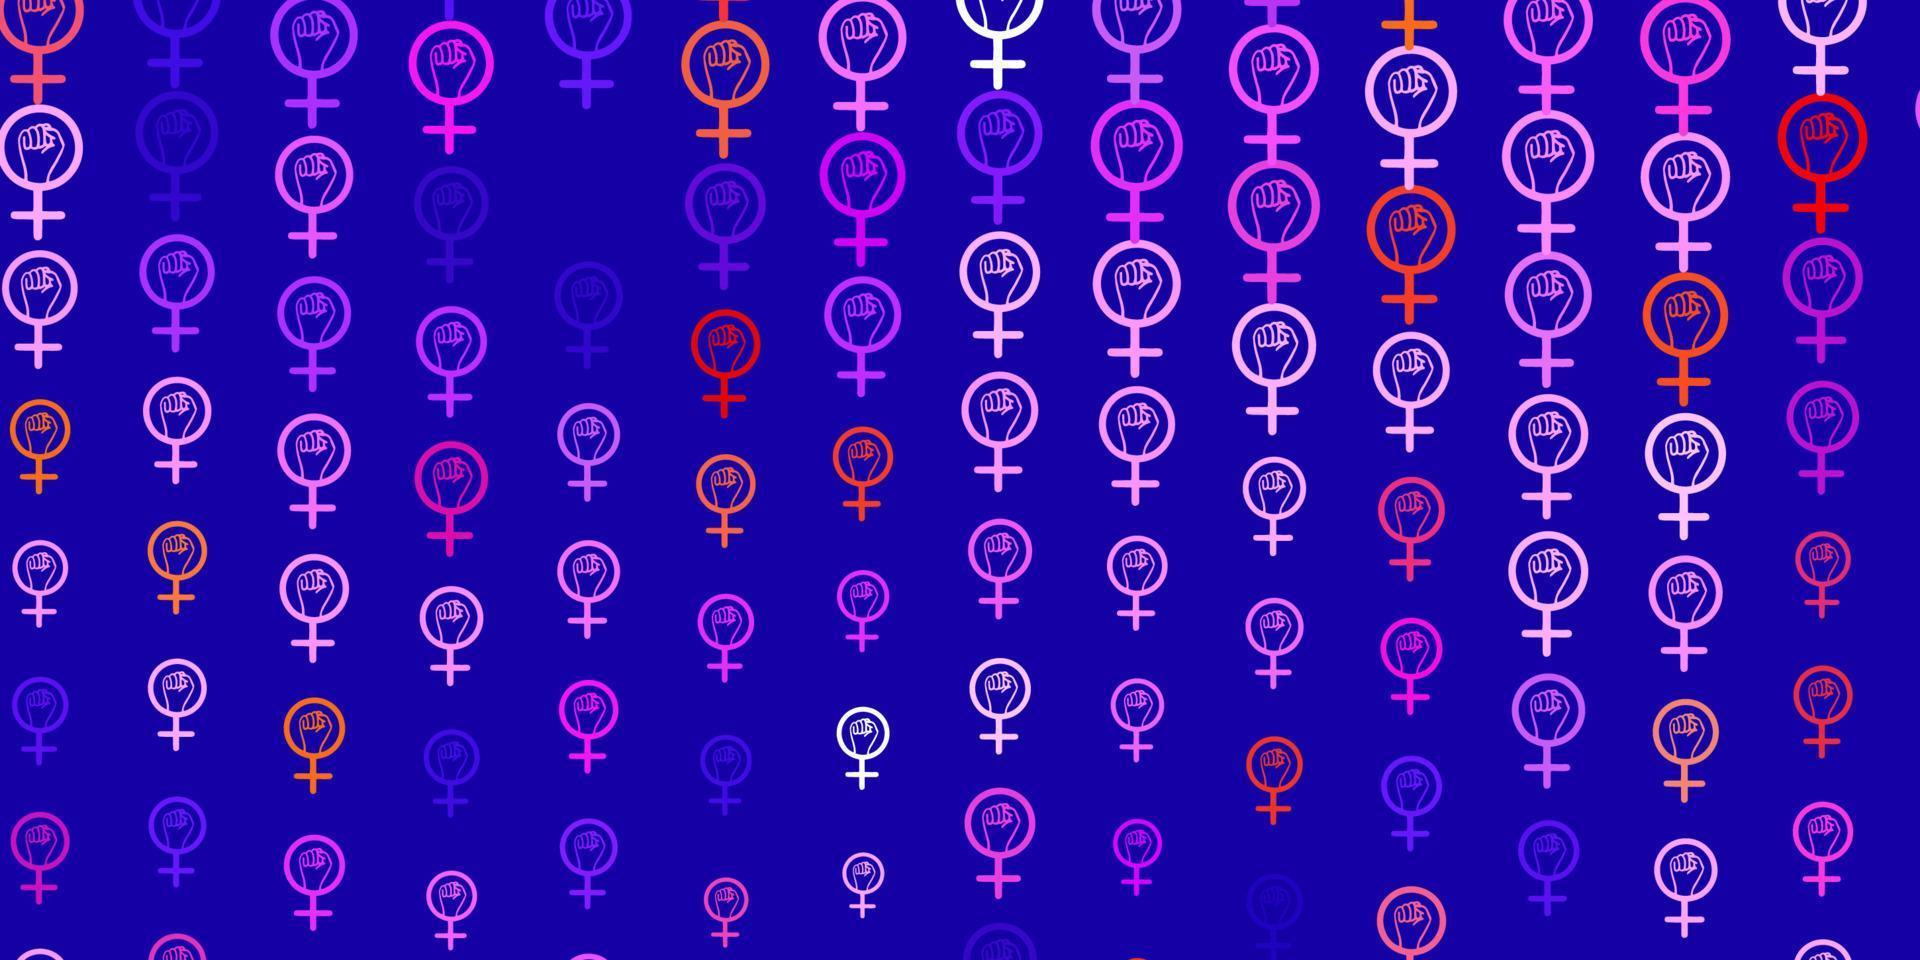 padrão de vetor azul e vermelho claro com elementos do feminismo.